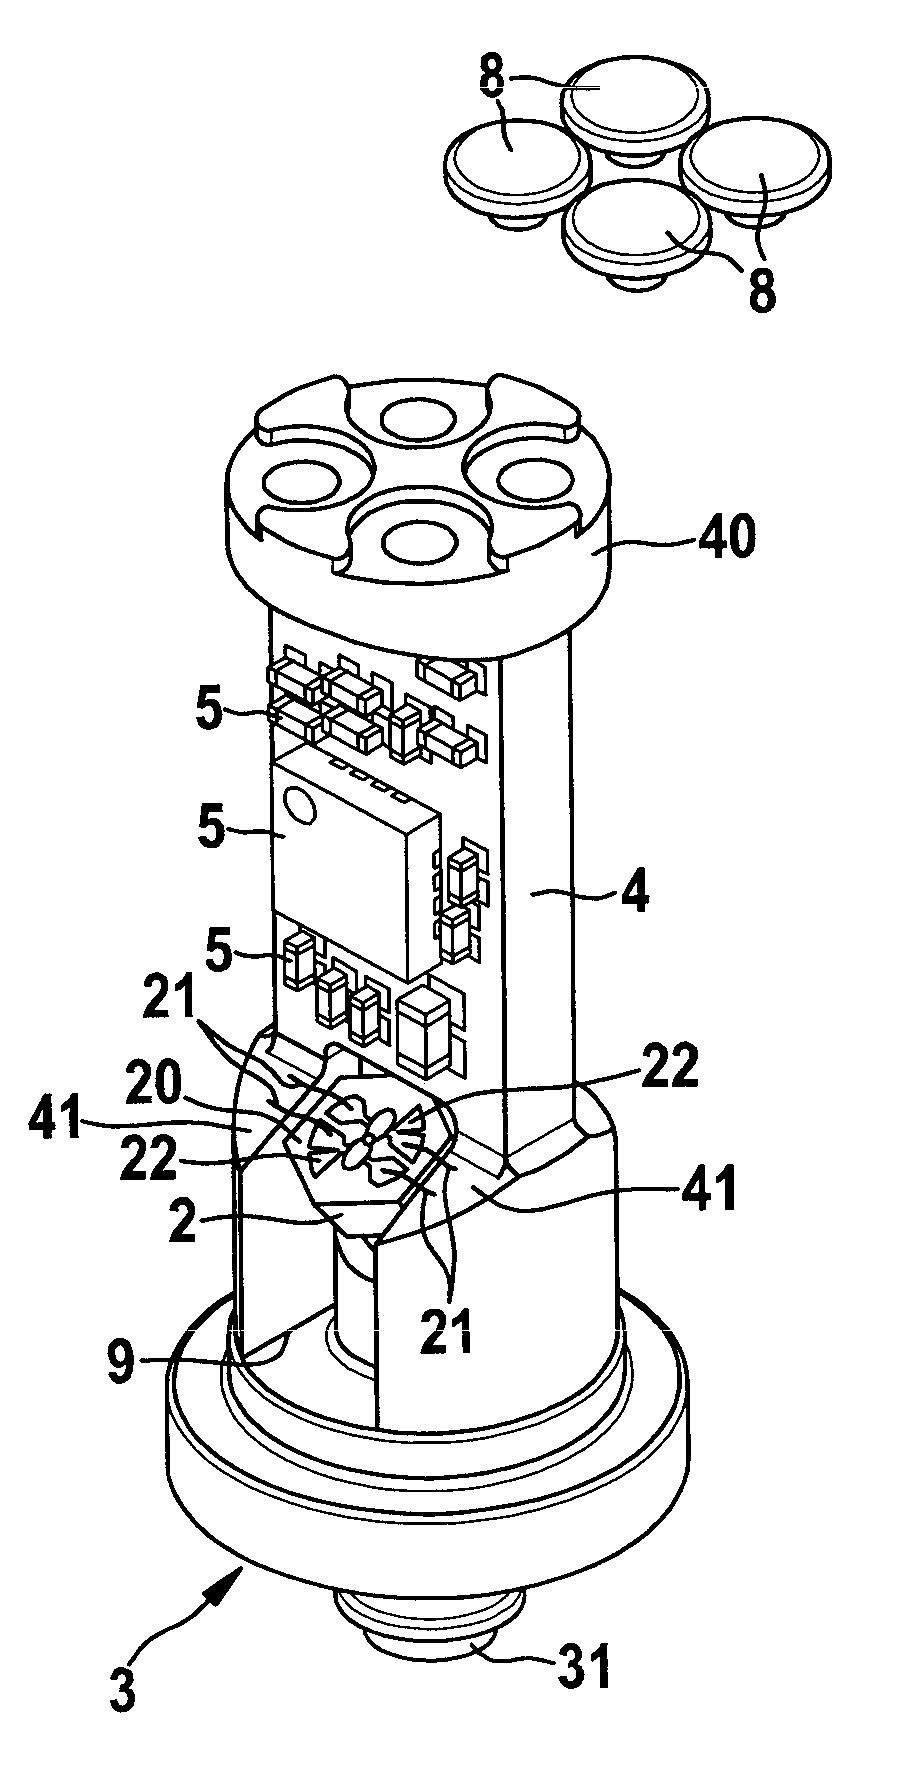 Pressure sensor, in particular for a braking apparatus